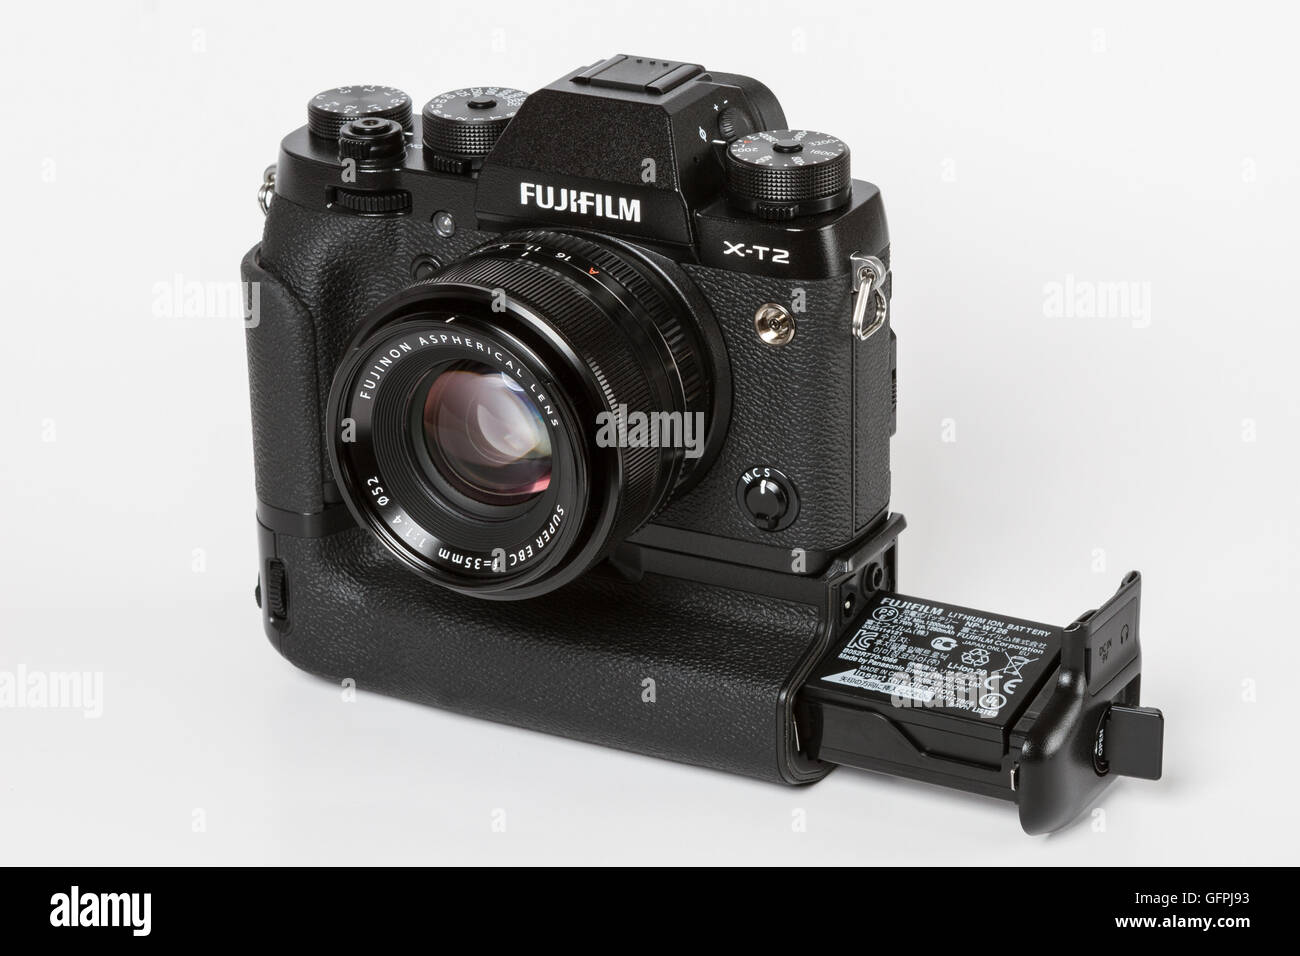 FUJIFILM X-T2, 24 mégapixels, caméra vidéo 4K mirrorless 35mm avec objectif  Fujinon 1,4 et avec un grip batterie supplémentaire Photo Stock - Alamy